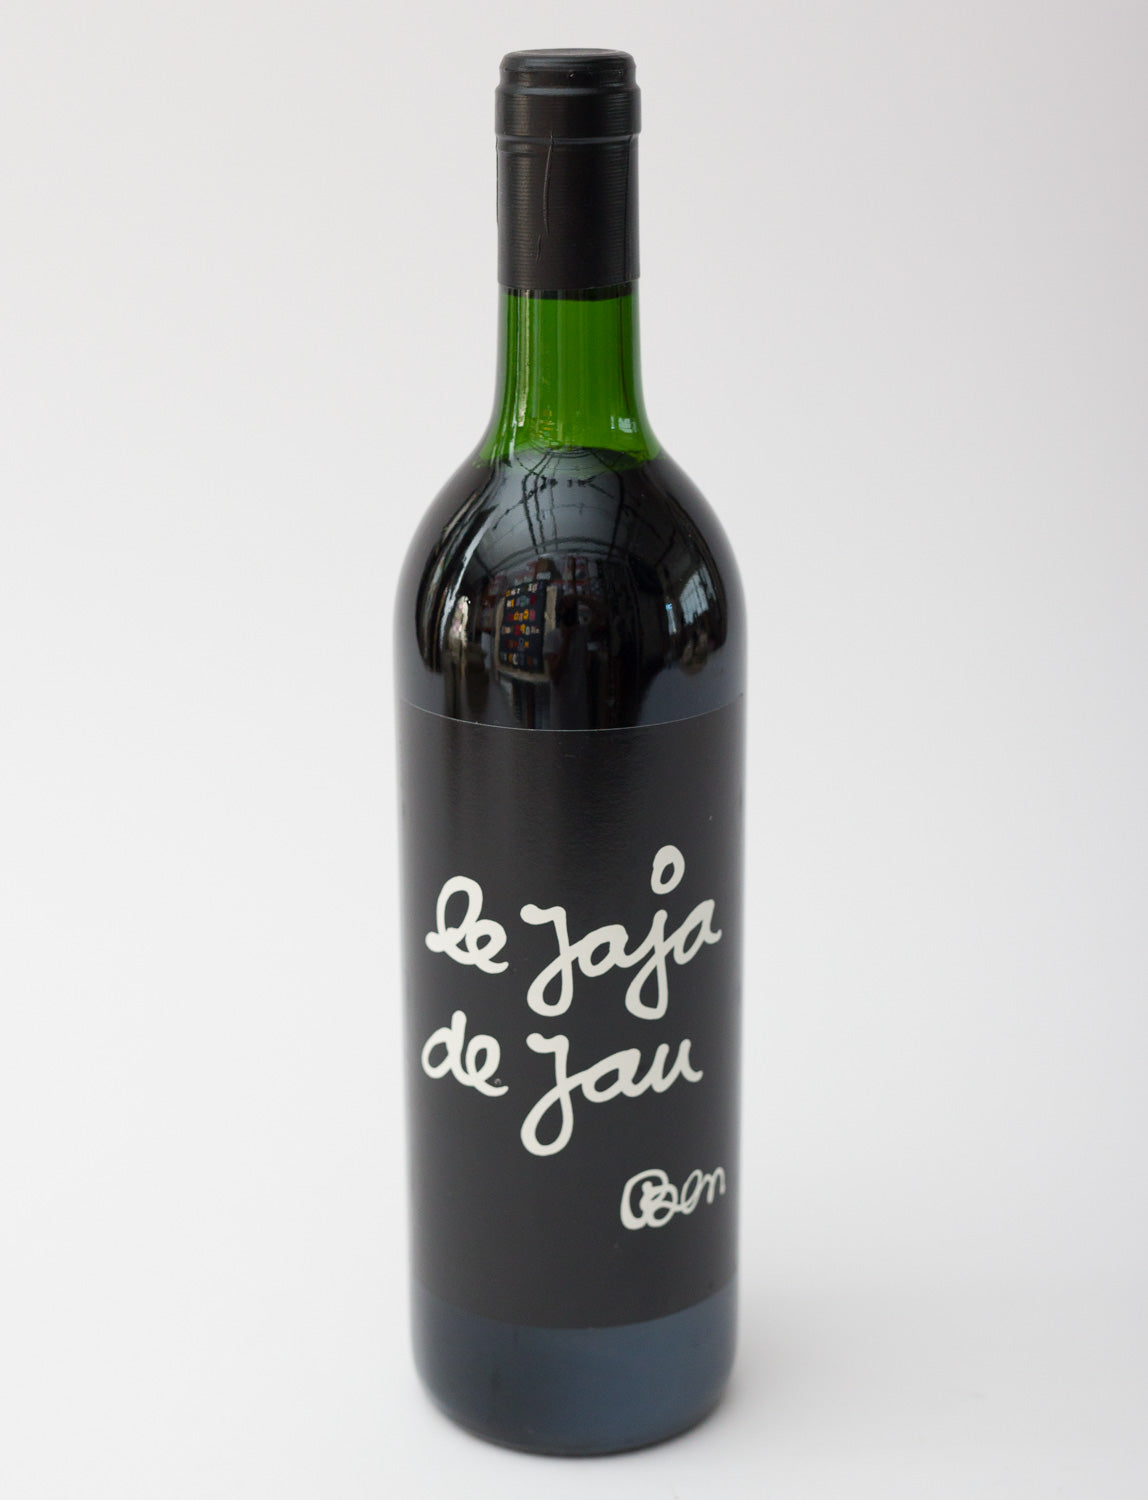 Ben Vautier - Wine - Vin de pays des cotes catalanes - Le Jaja de Jau, 1992